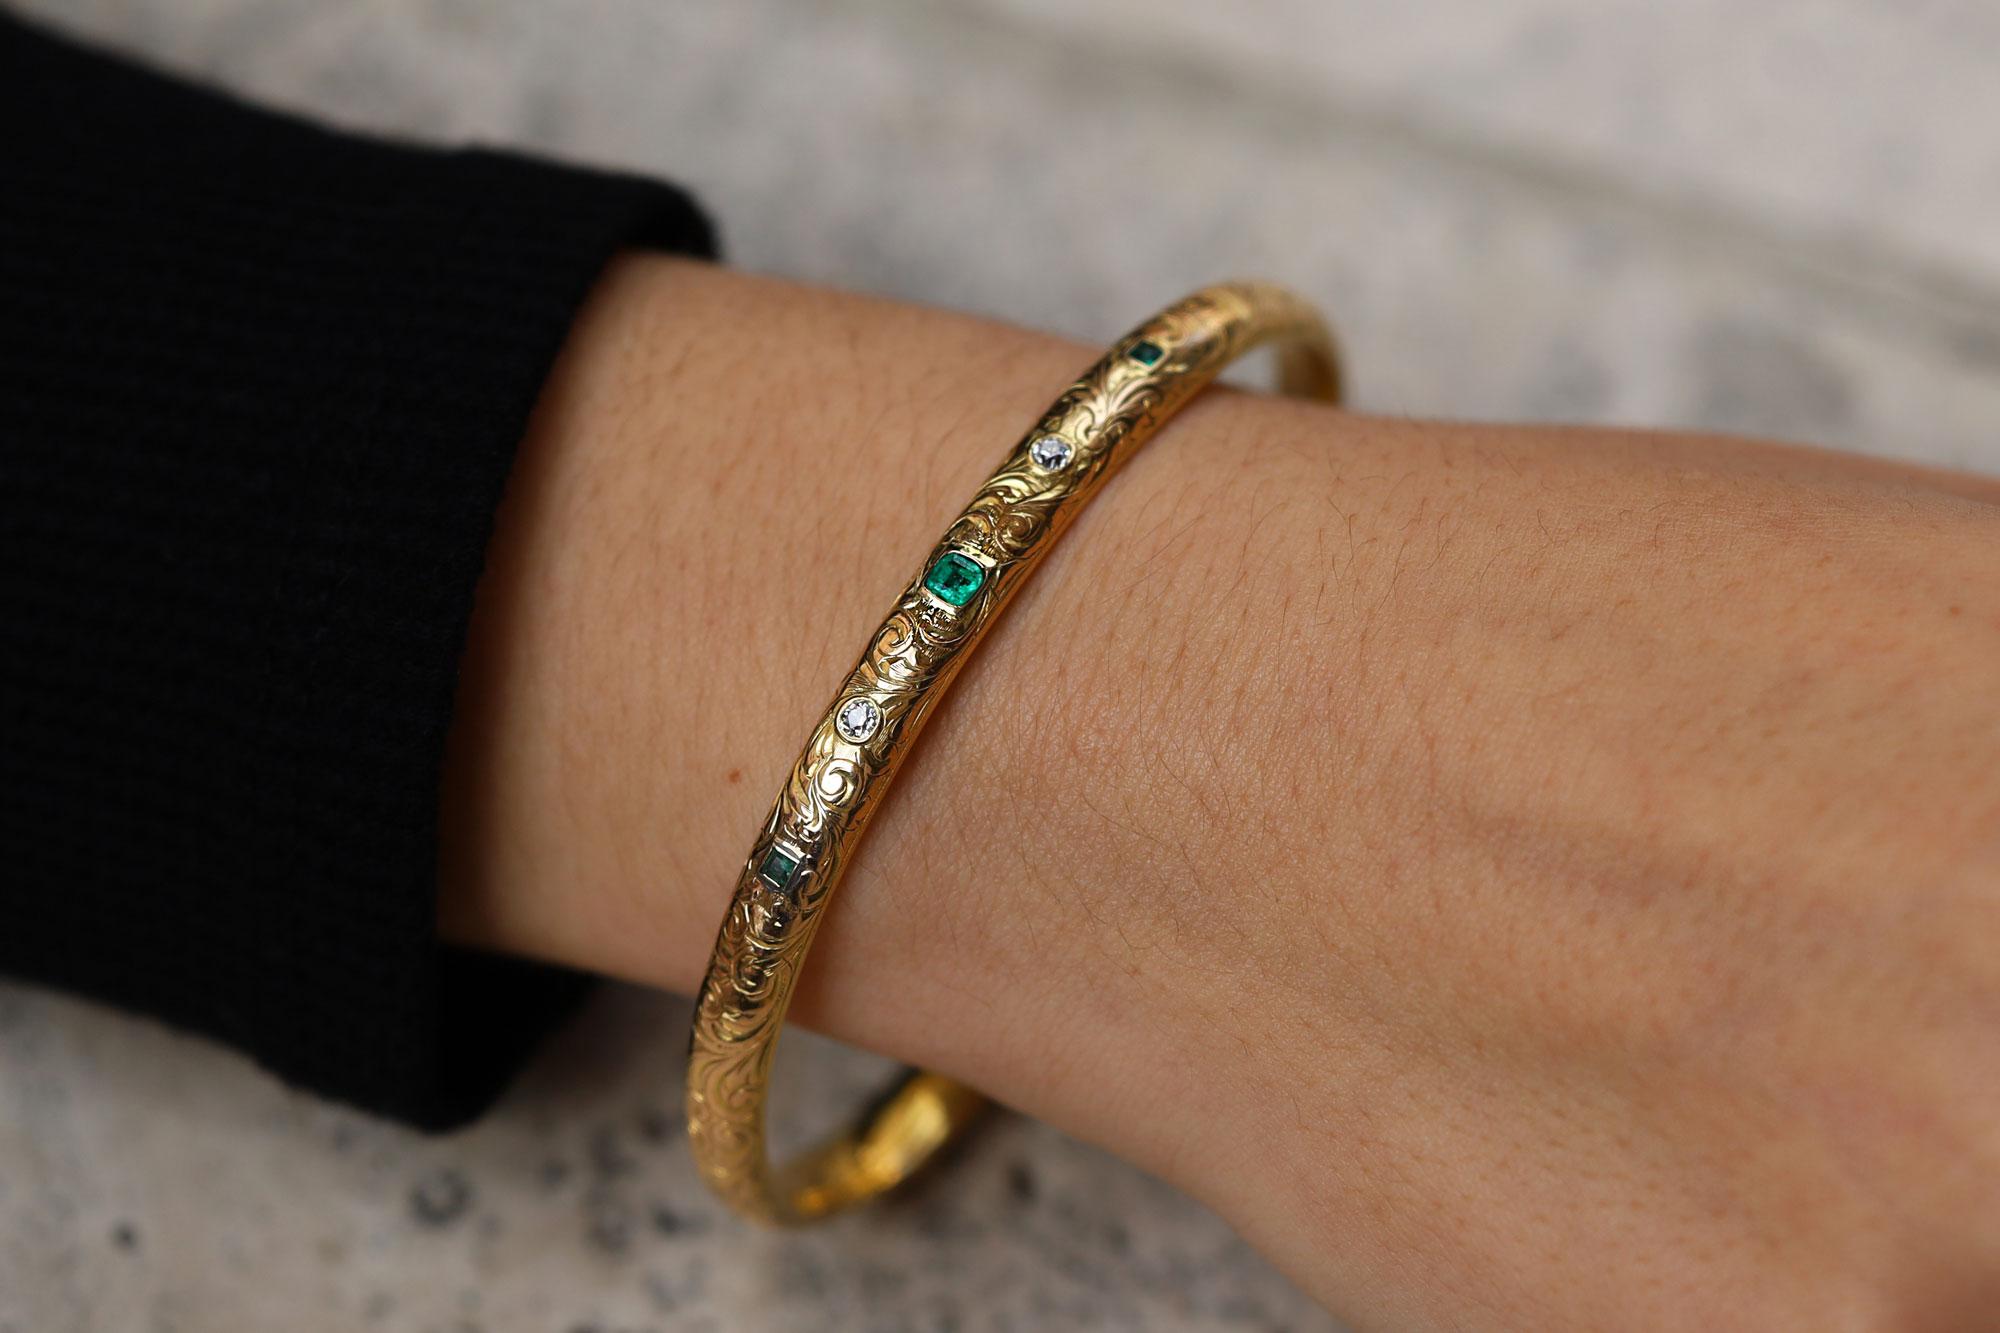 Notre équipe est d'accord : il s'agit de l'un des plus beaux exemples d'un authentique bracelet antique Art Nouveau. Ce bracelet en or jaune 16 carats richement patiné est orné d'une gravure de feuilles d'acanthe et rehaussé d'un quintet d'émeraudes